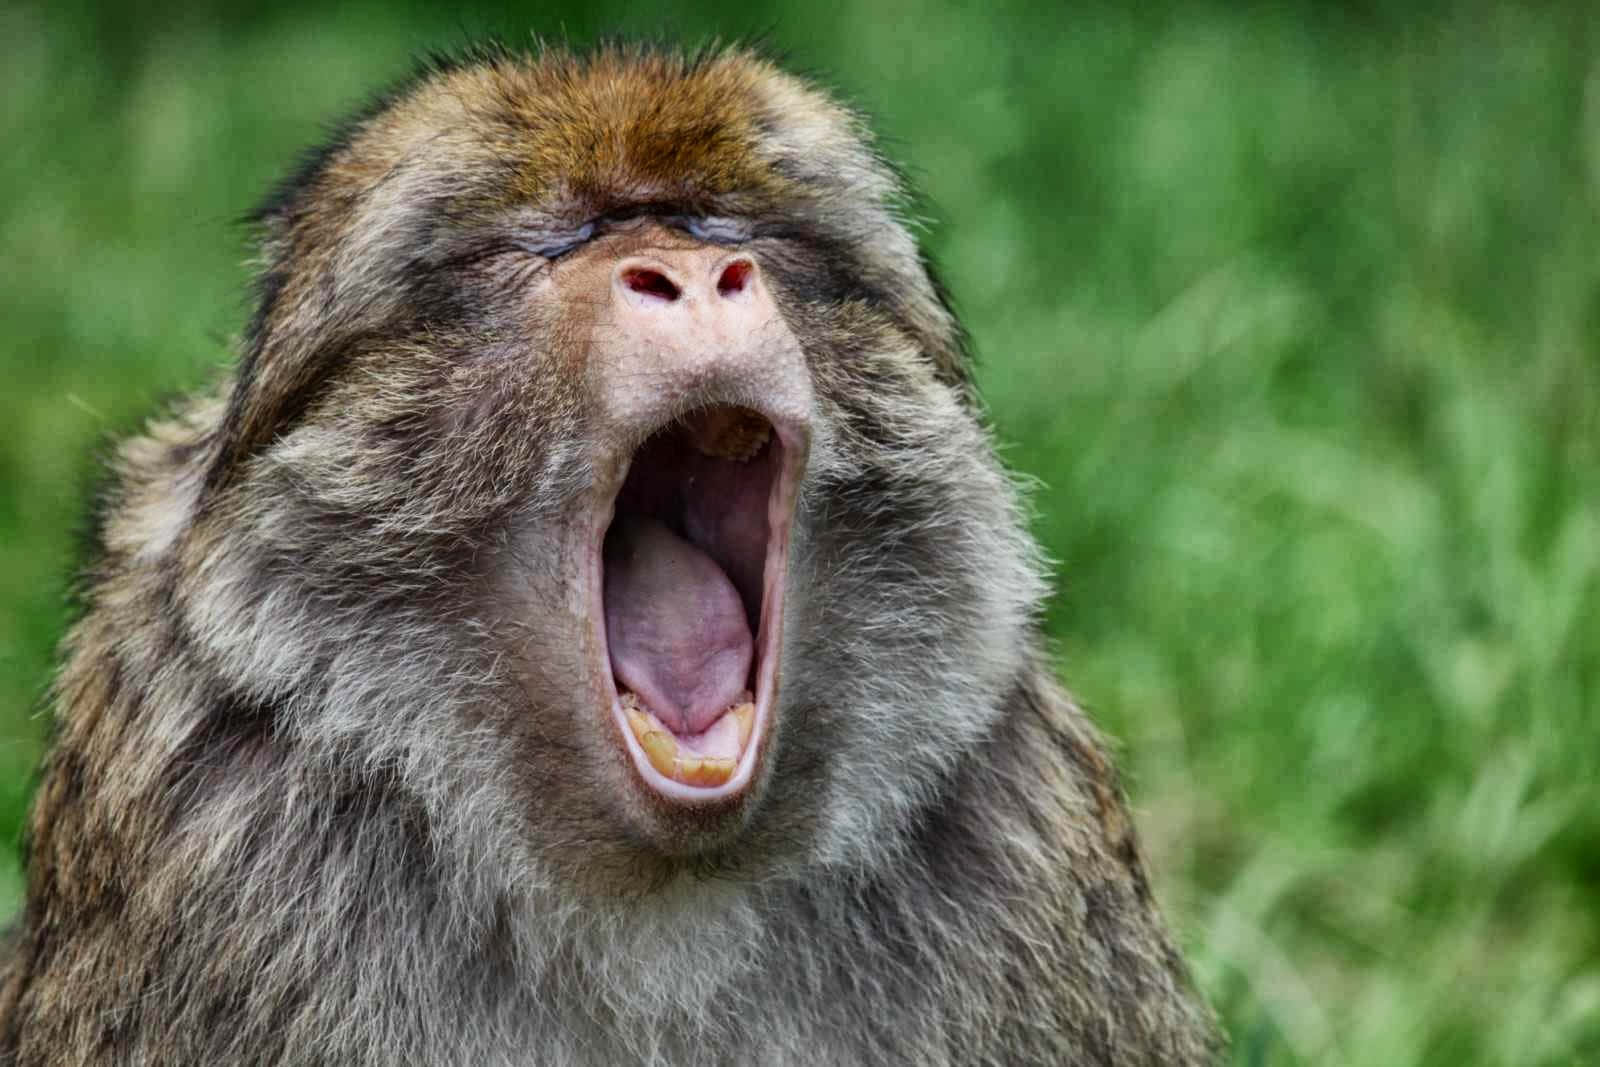 "The happiest monkey around!"